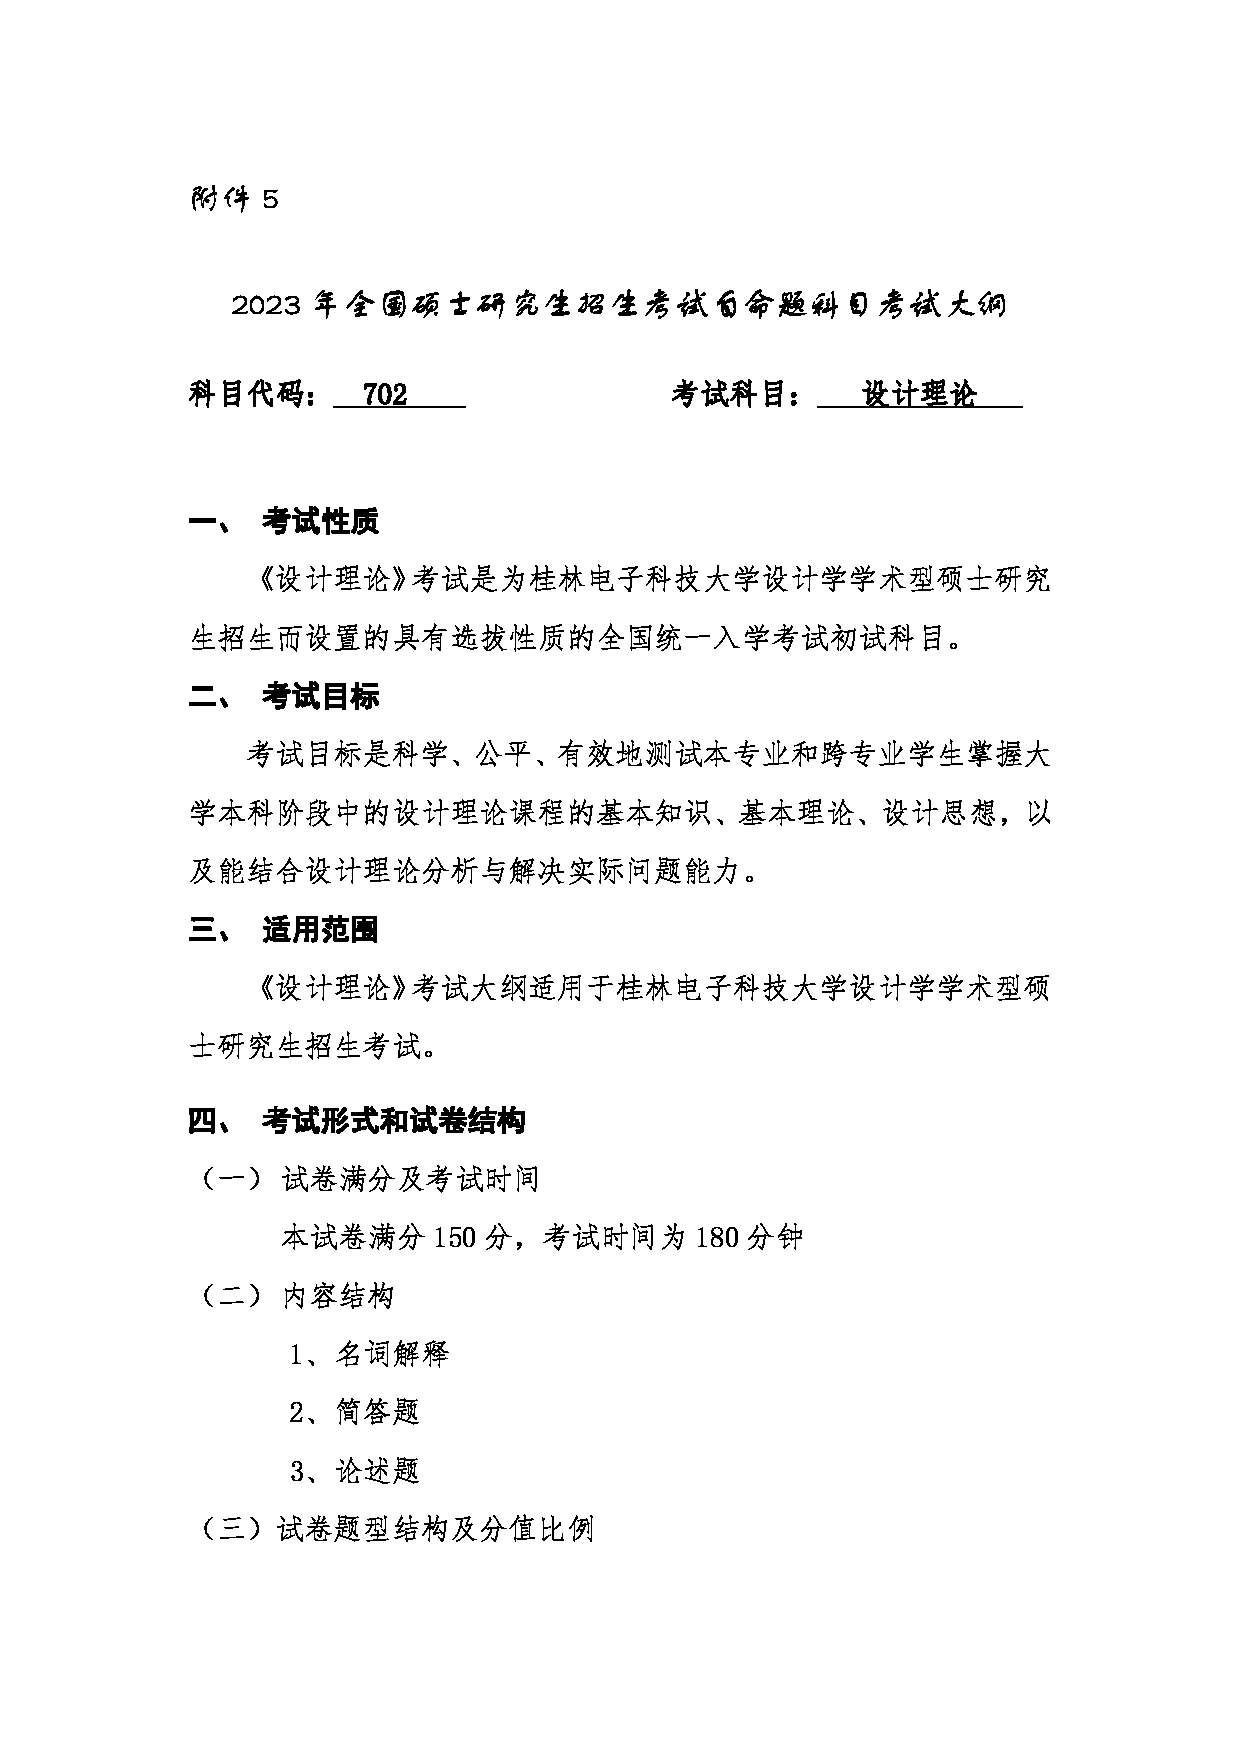 2023考研大纲：桂林电子科技大学2023年考研科目 （702设计理论） 考试大纲第1页